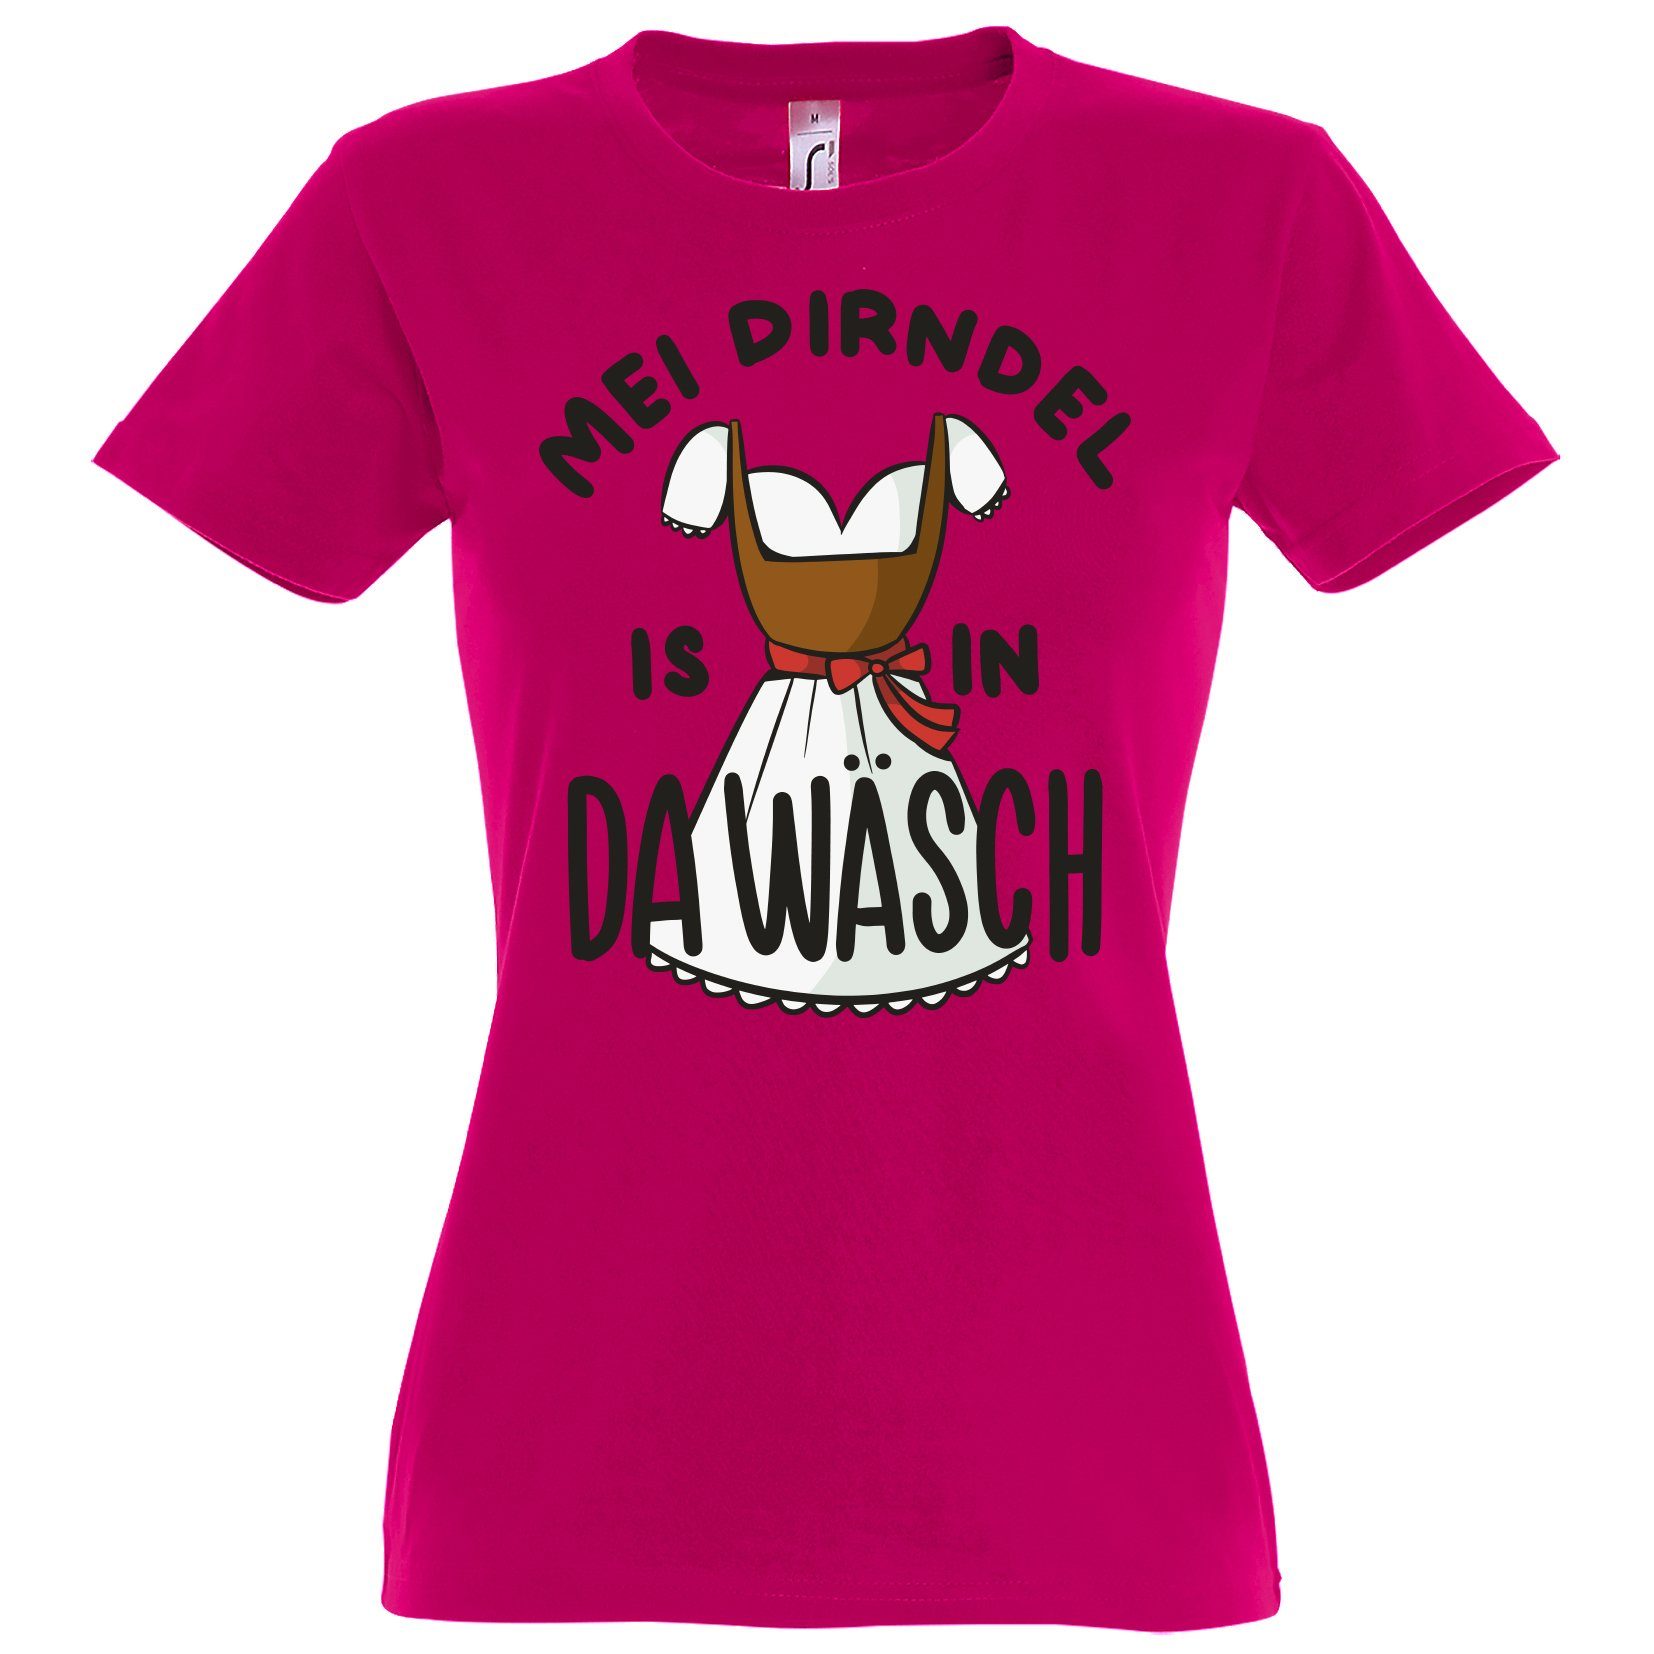 Youth Designz Print-Shirt MEI DIRNDEL IS IN DA WÄSCH Damen T-Shirt mit Fun-Look Dirndl Aufdruck und lustigem Spruch